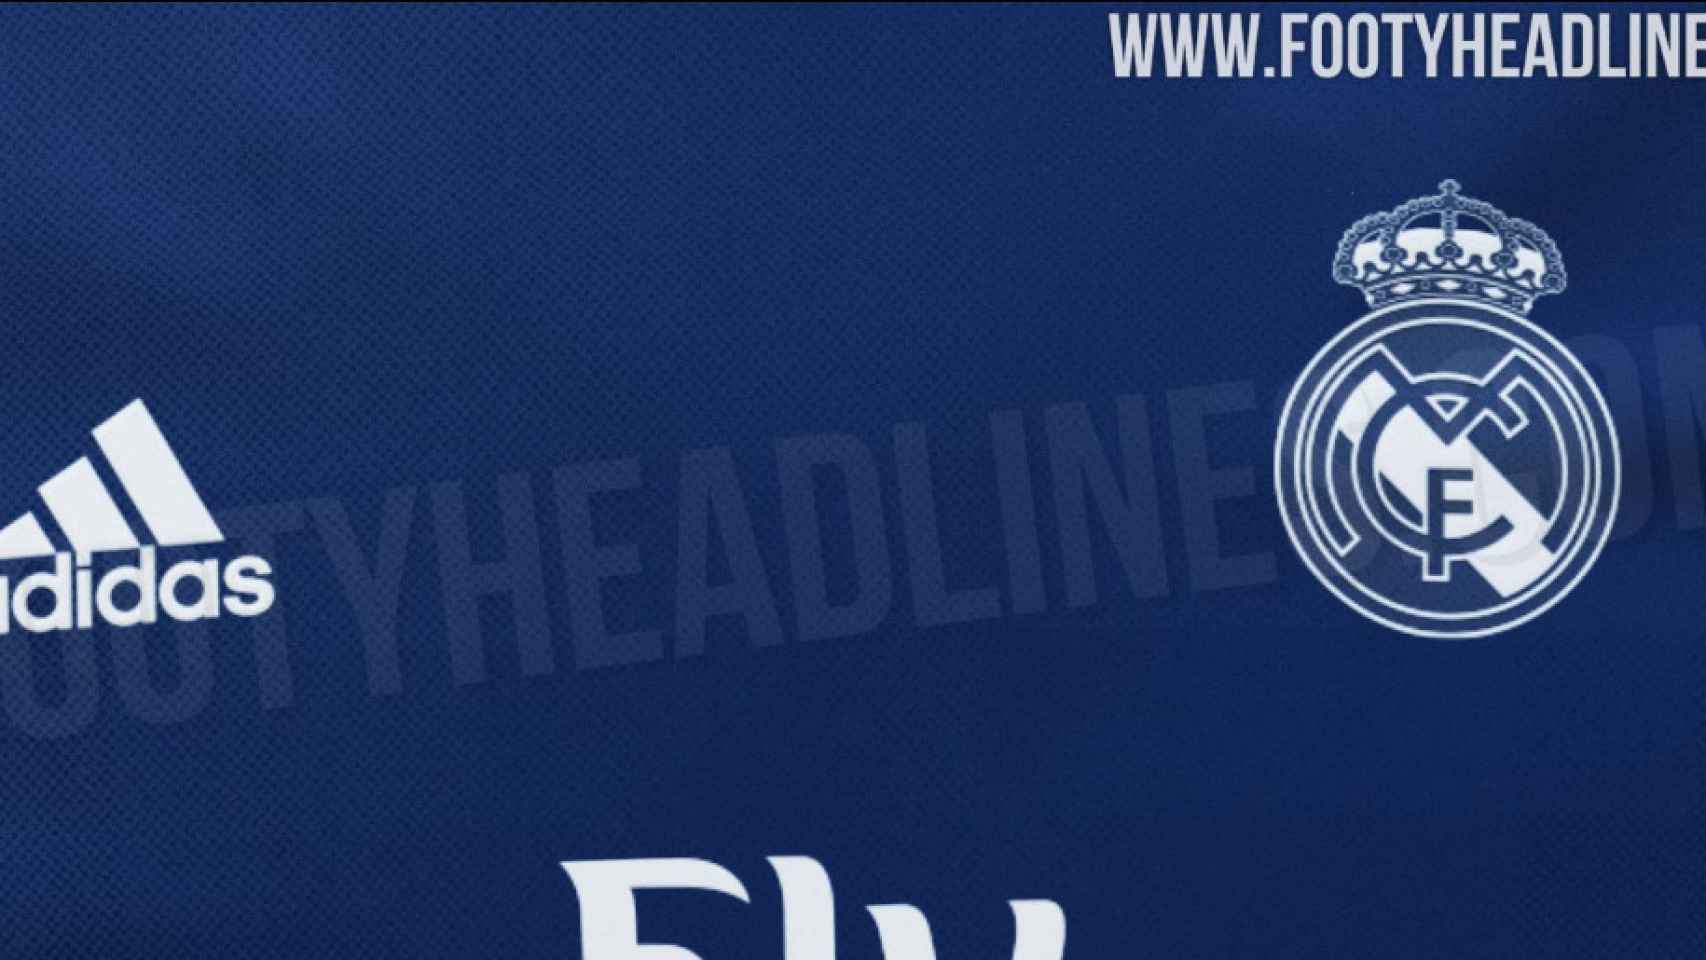 Ilustración de la posible camiseta visitante del Real Madrid para la temporada 2019/2020. Foto: footyheadlines.com